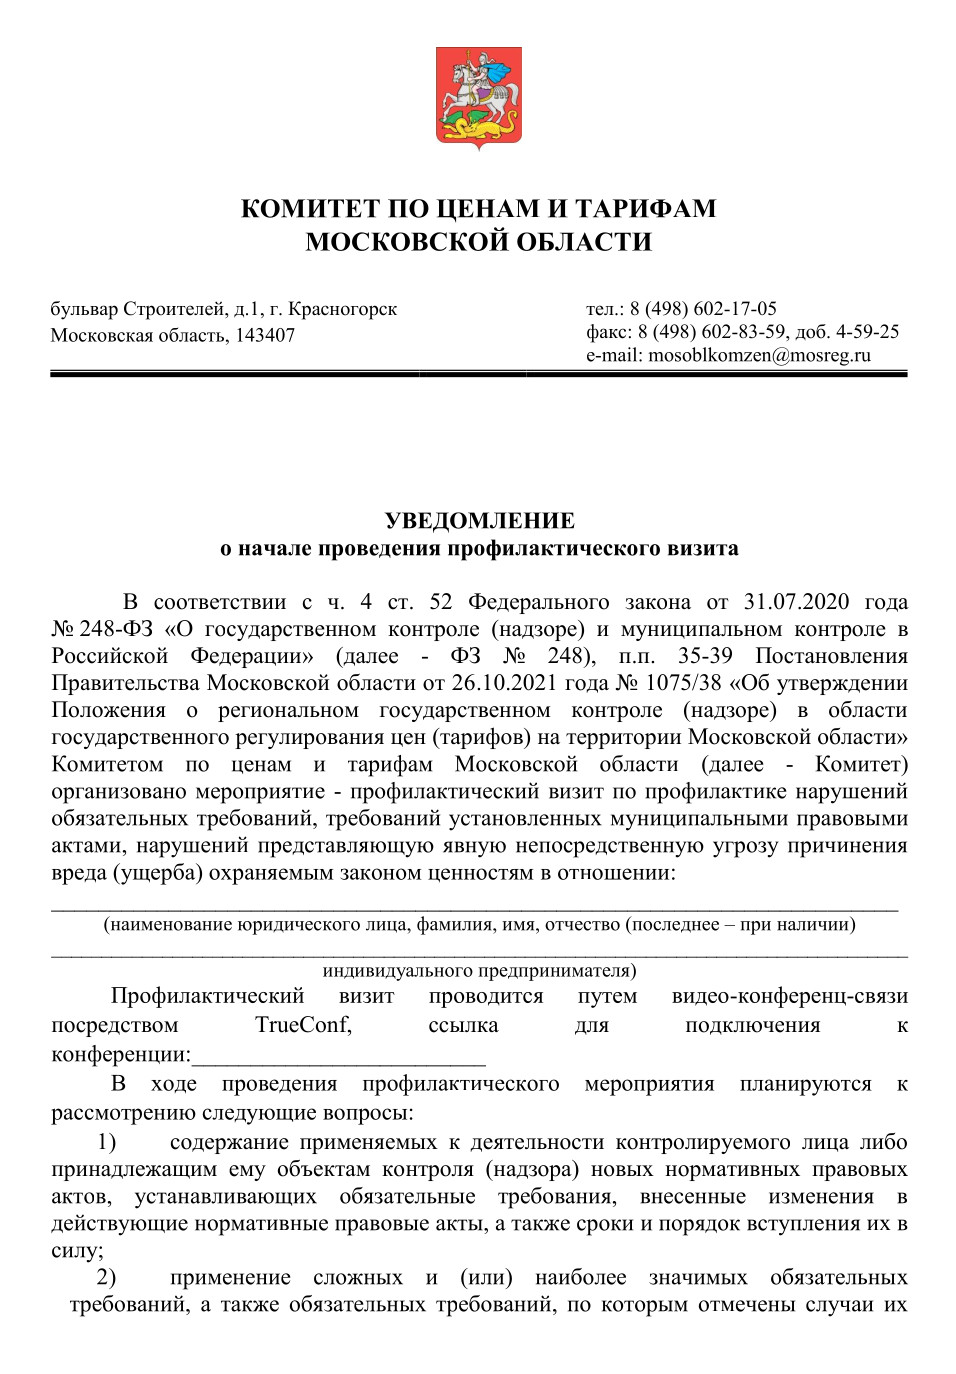 Такое уведомление направляет комитет по ценам и тарифам Московской области. Источник: ktc.mosreg.ru